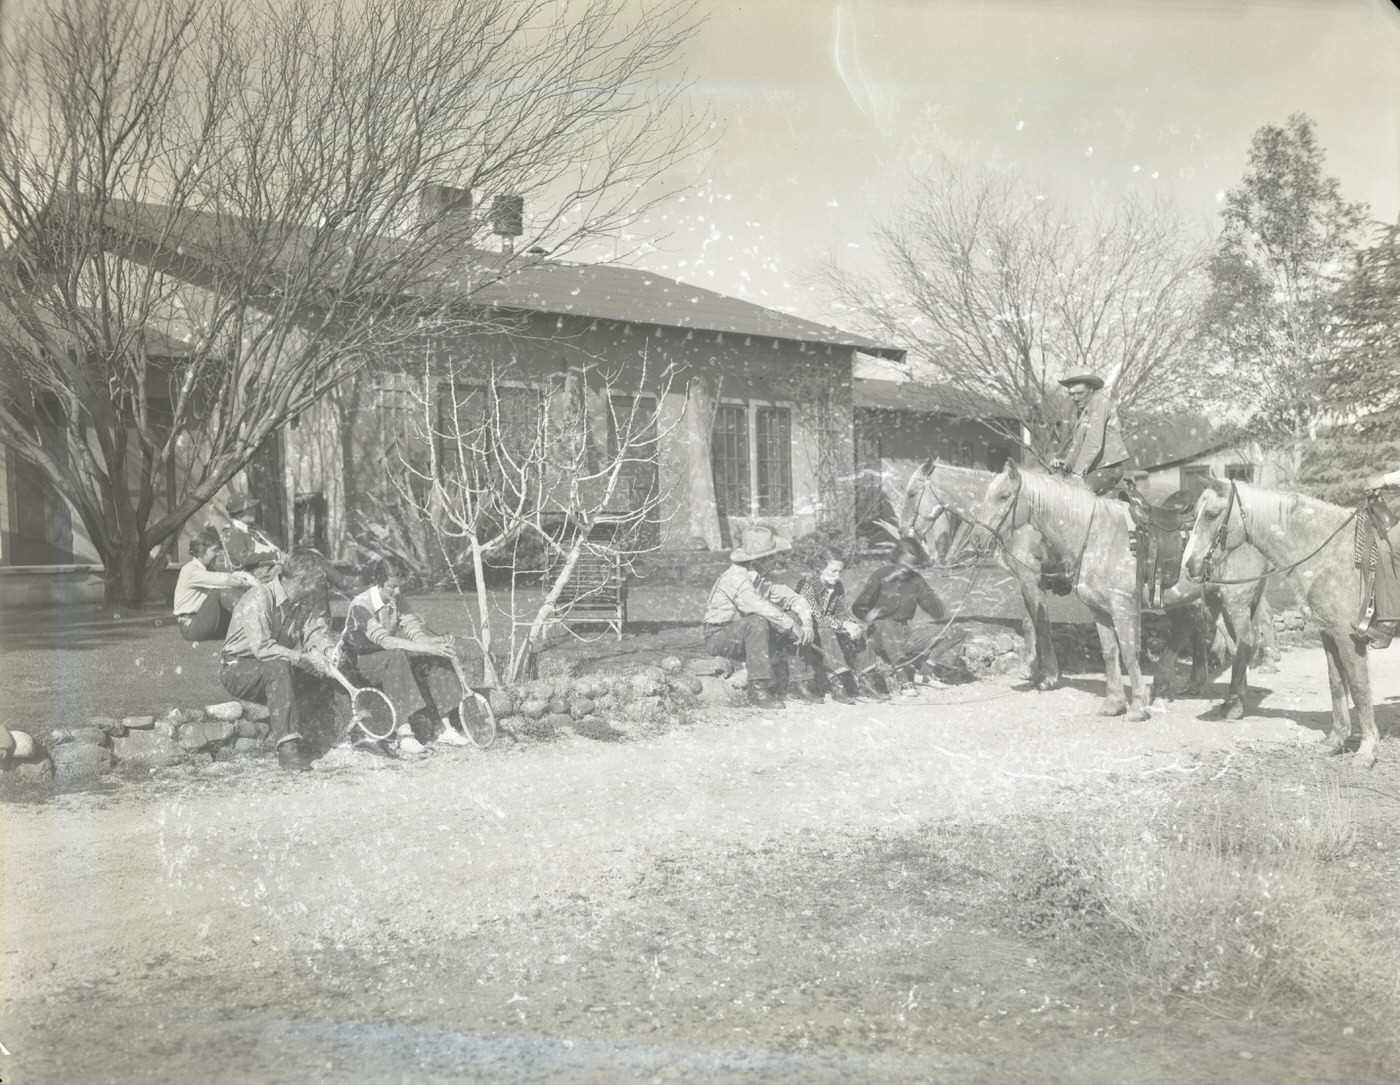 Monte Vista Ranch Guests, 1930s